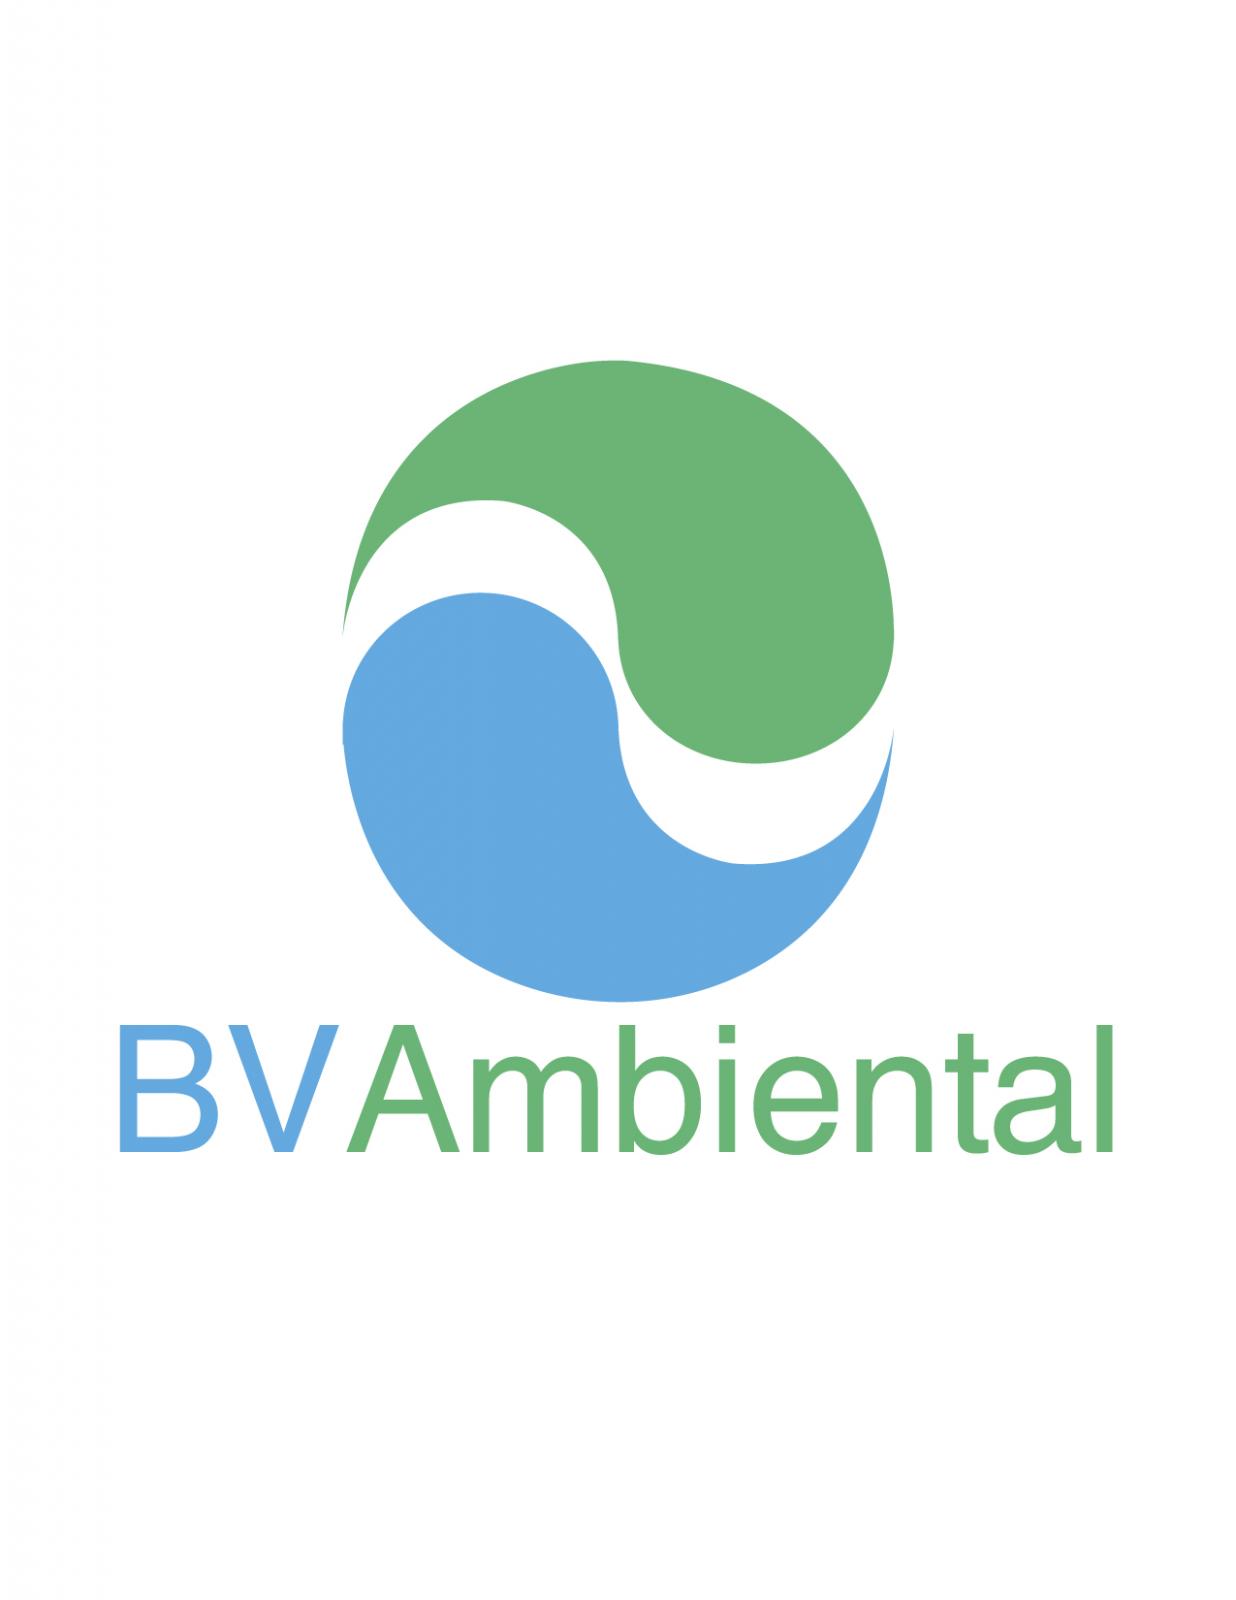 BV Ambiental